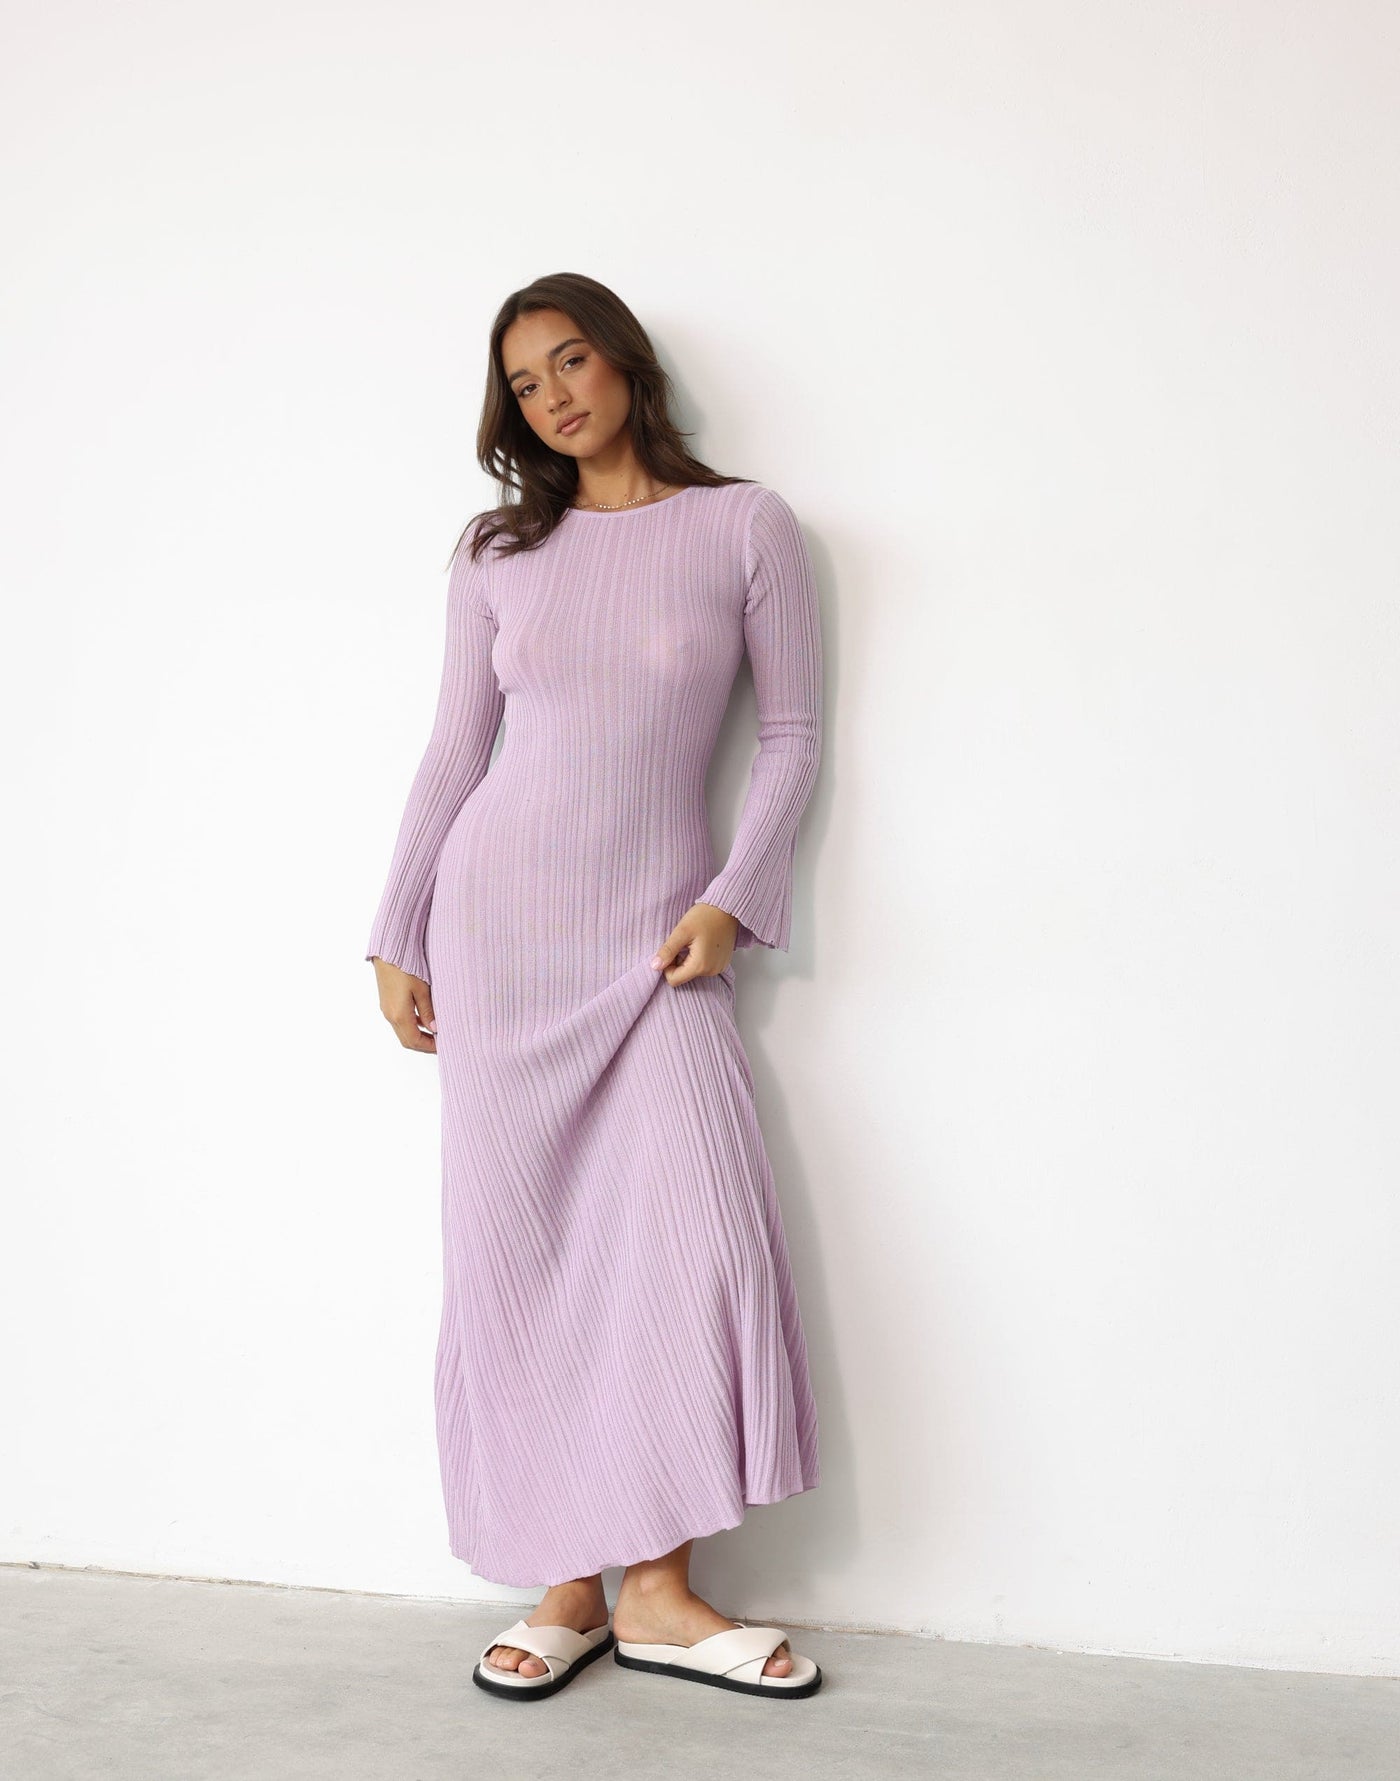 Harmonia Maxi Dress (Peony) - Flared Sleeve Ribbed Stretchy Bodycon Dress - Women's Dress - Charcoal Clothing